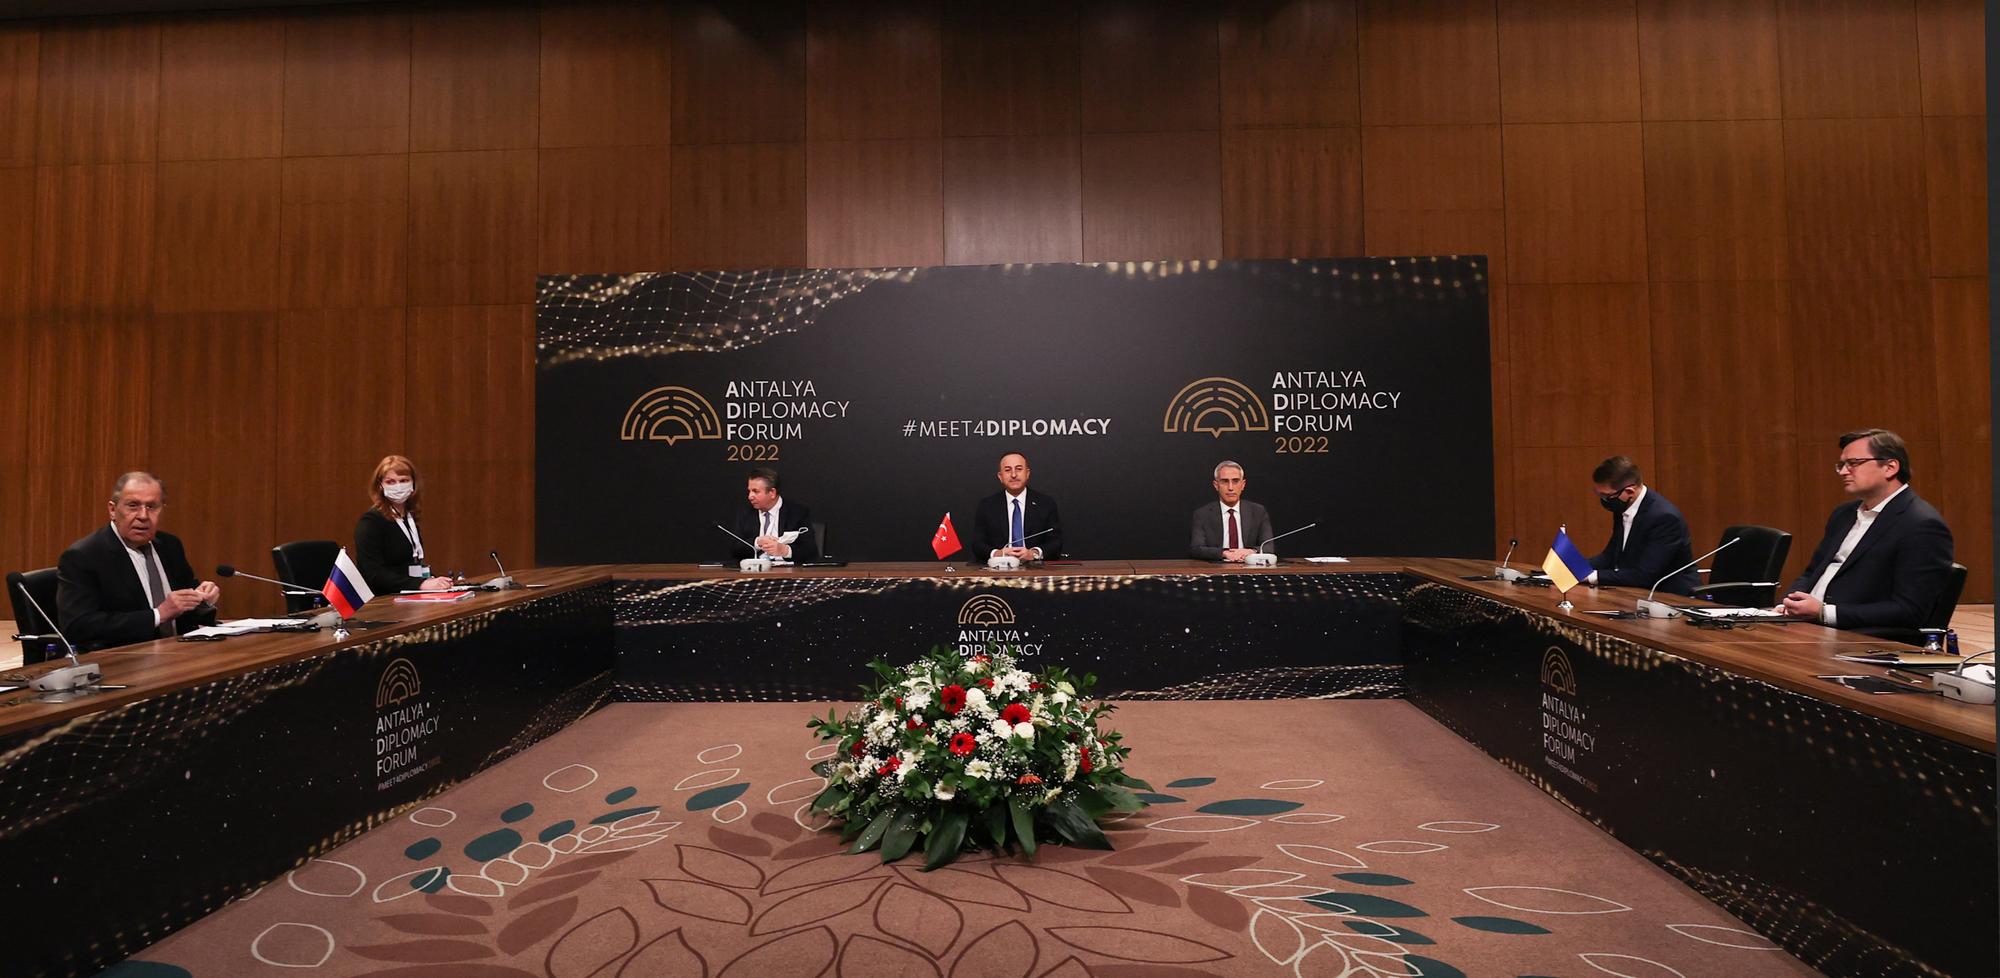 Les pourparlers ont débuté à Antalya en Turquie entre les ministres des Affaires étrangères russe Sergeï Lavrov (g.) et ukrainien Dmytro Kuleba (d.), sous le patronage du ministre turc Mevult Cavusoglu (c.). [Turkish Foreign Ministry/AFP - Cem Ozdel]